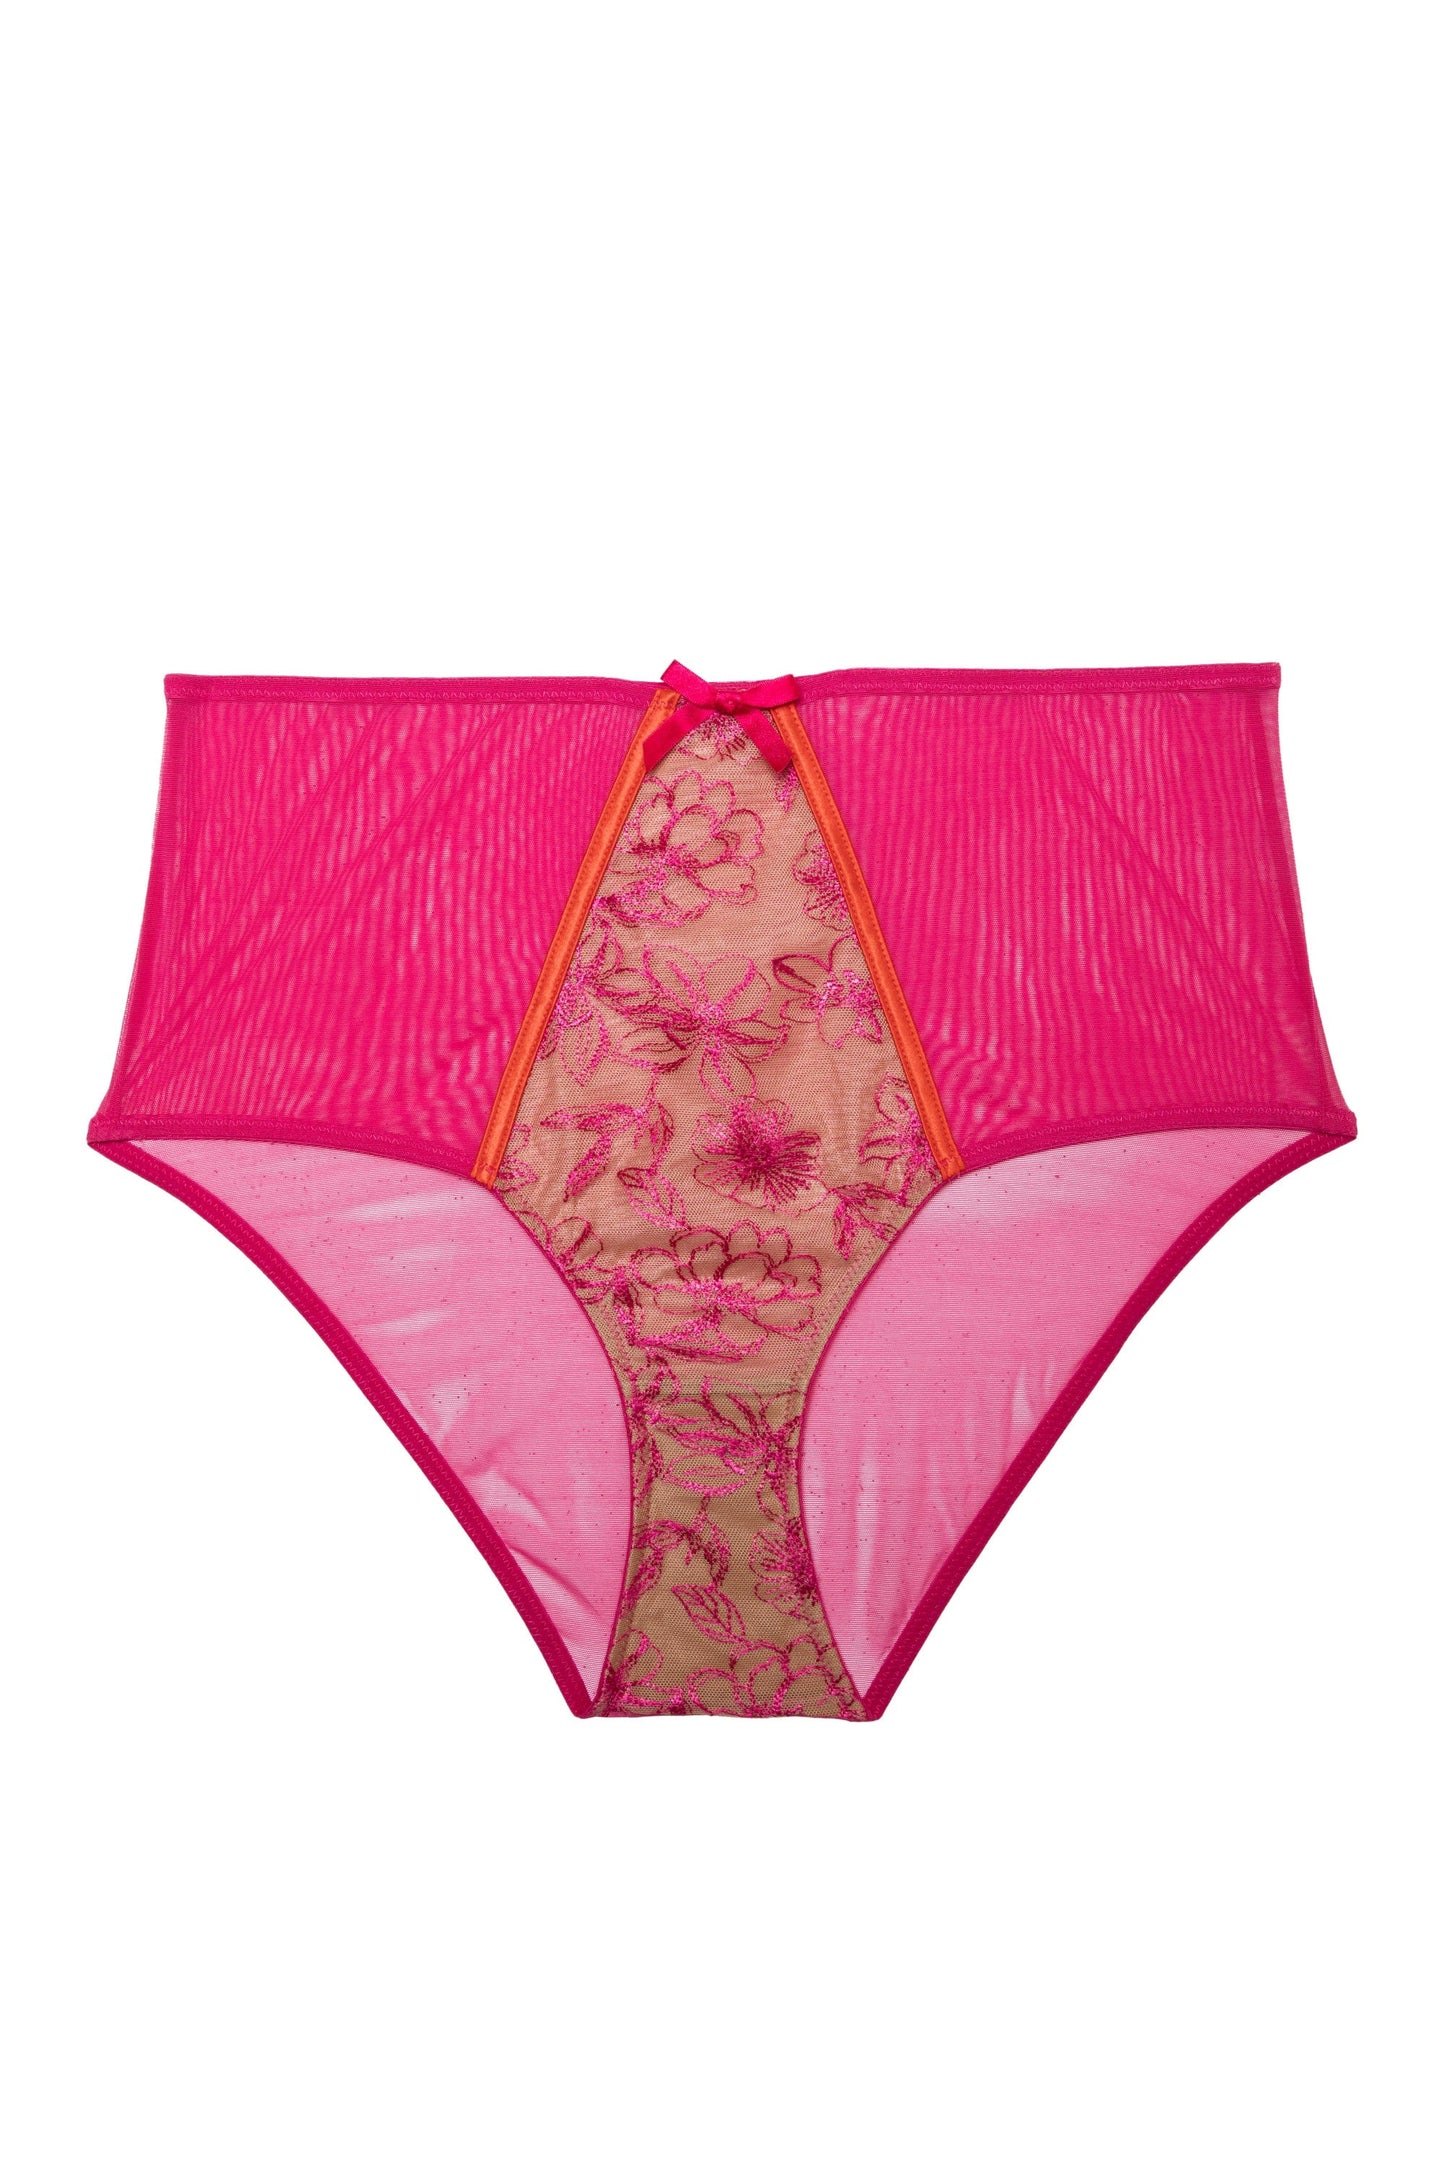 Pink High Waist Panties, Lingerie